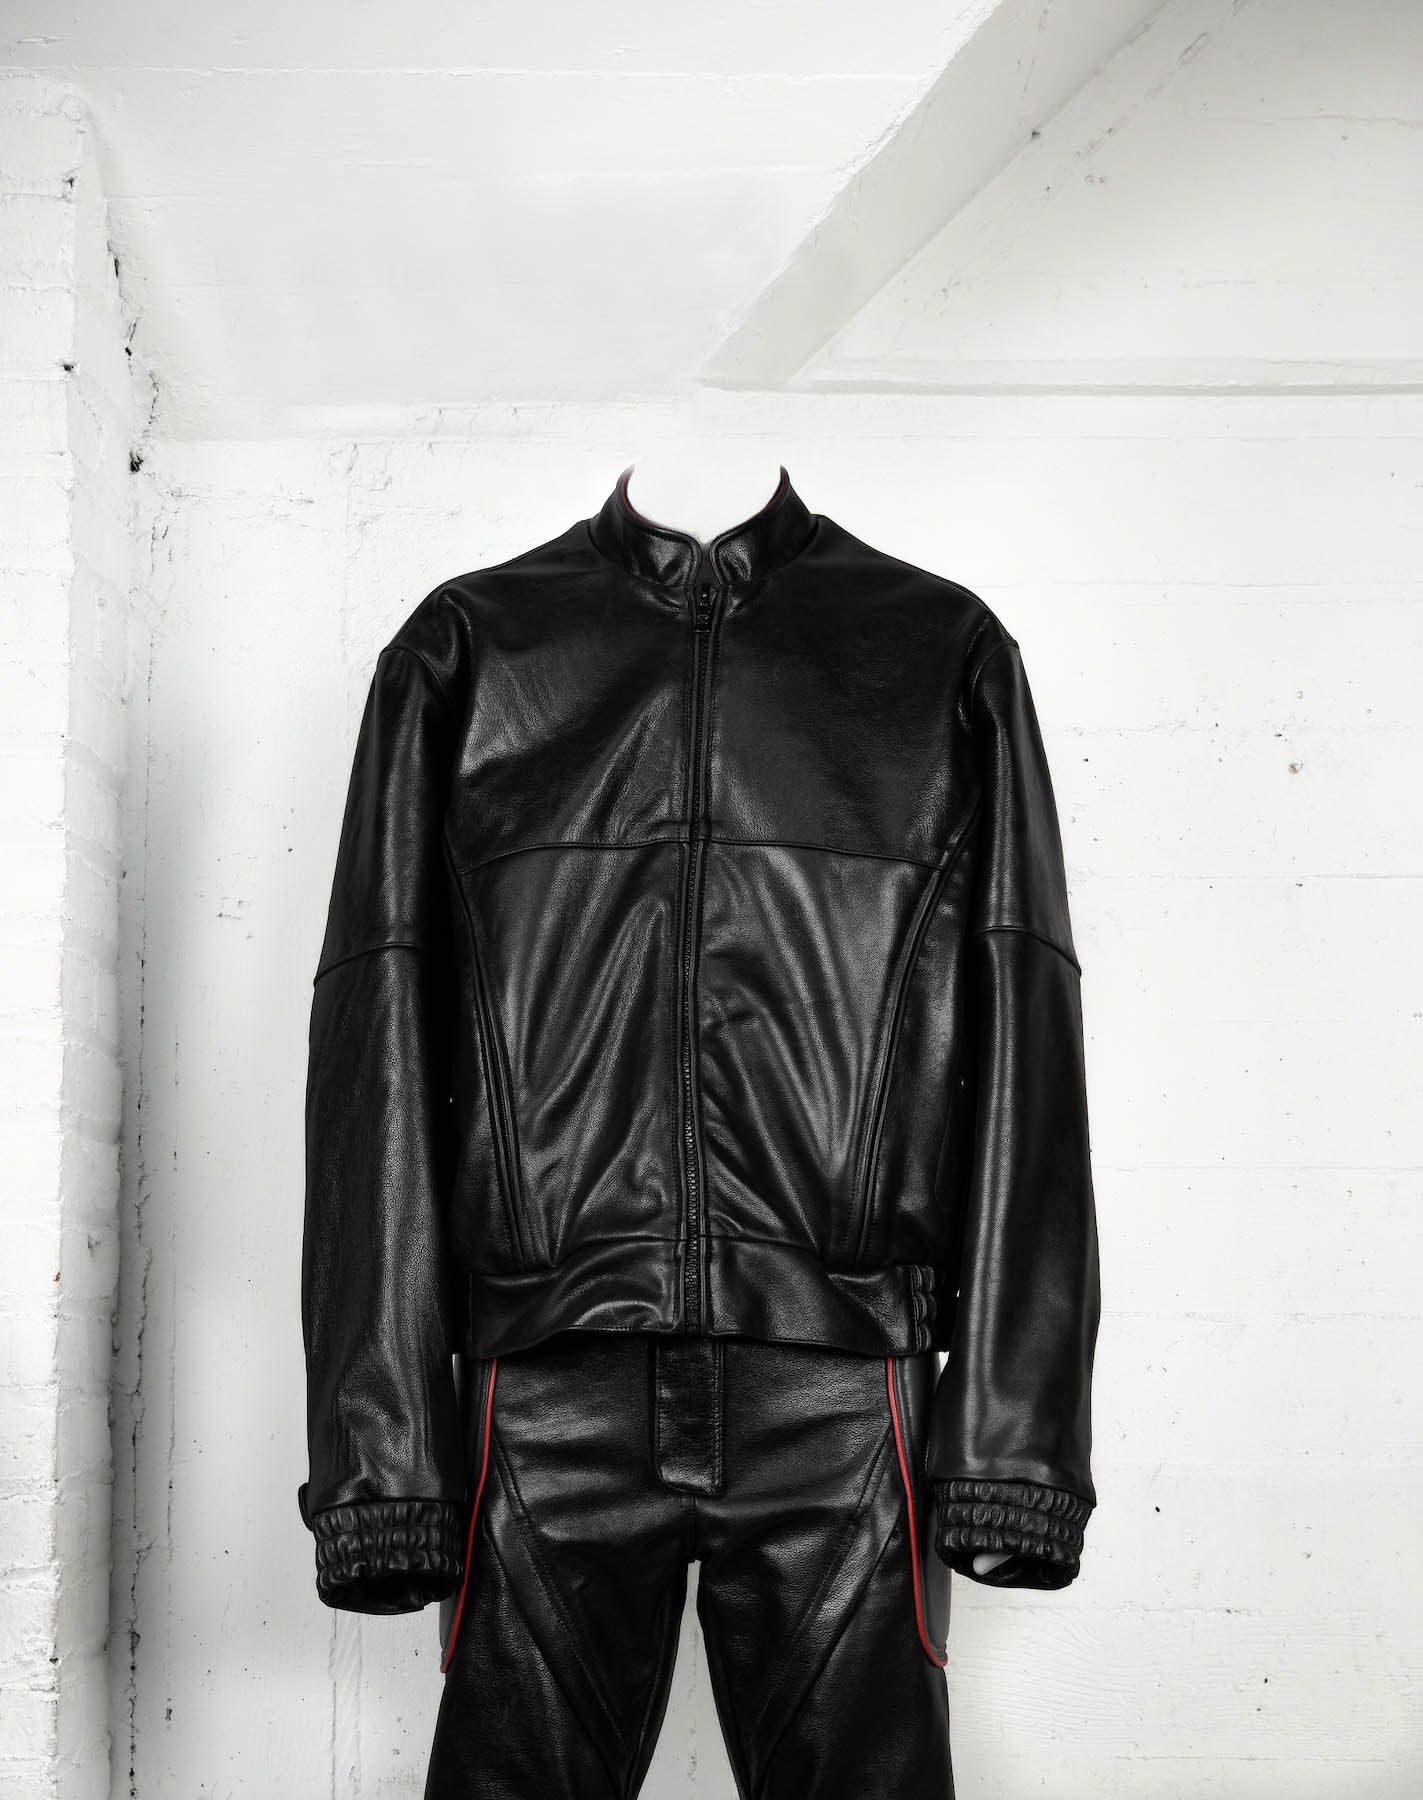 Jaron Baker Leather Jacket Studio